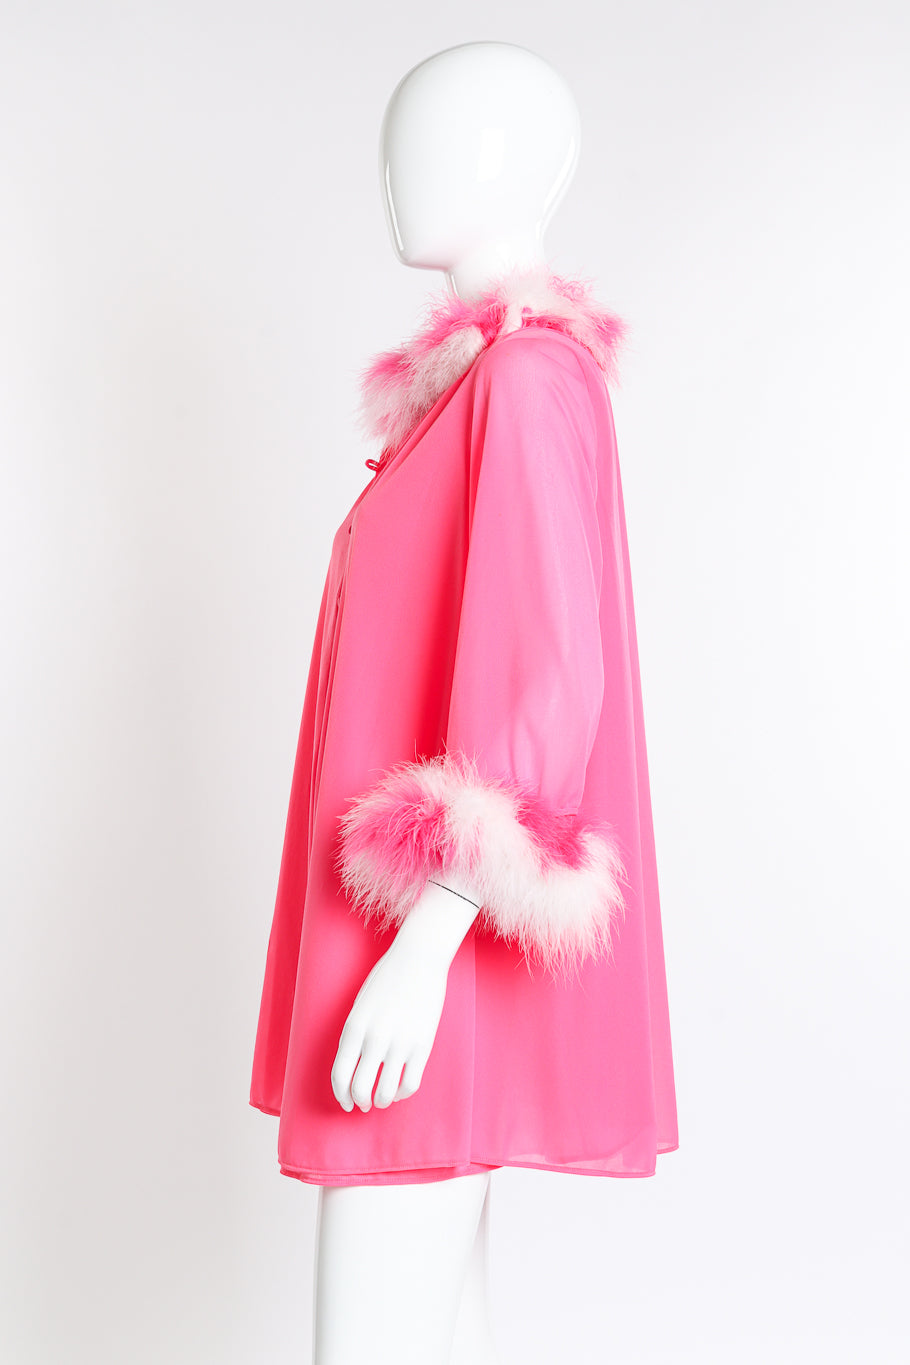 Vintage Flair Marabou Trim Top & Dress Set side on mannequin closeup @recess la